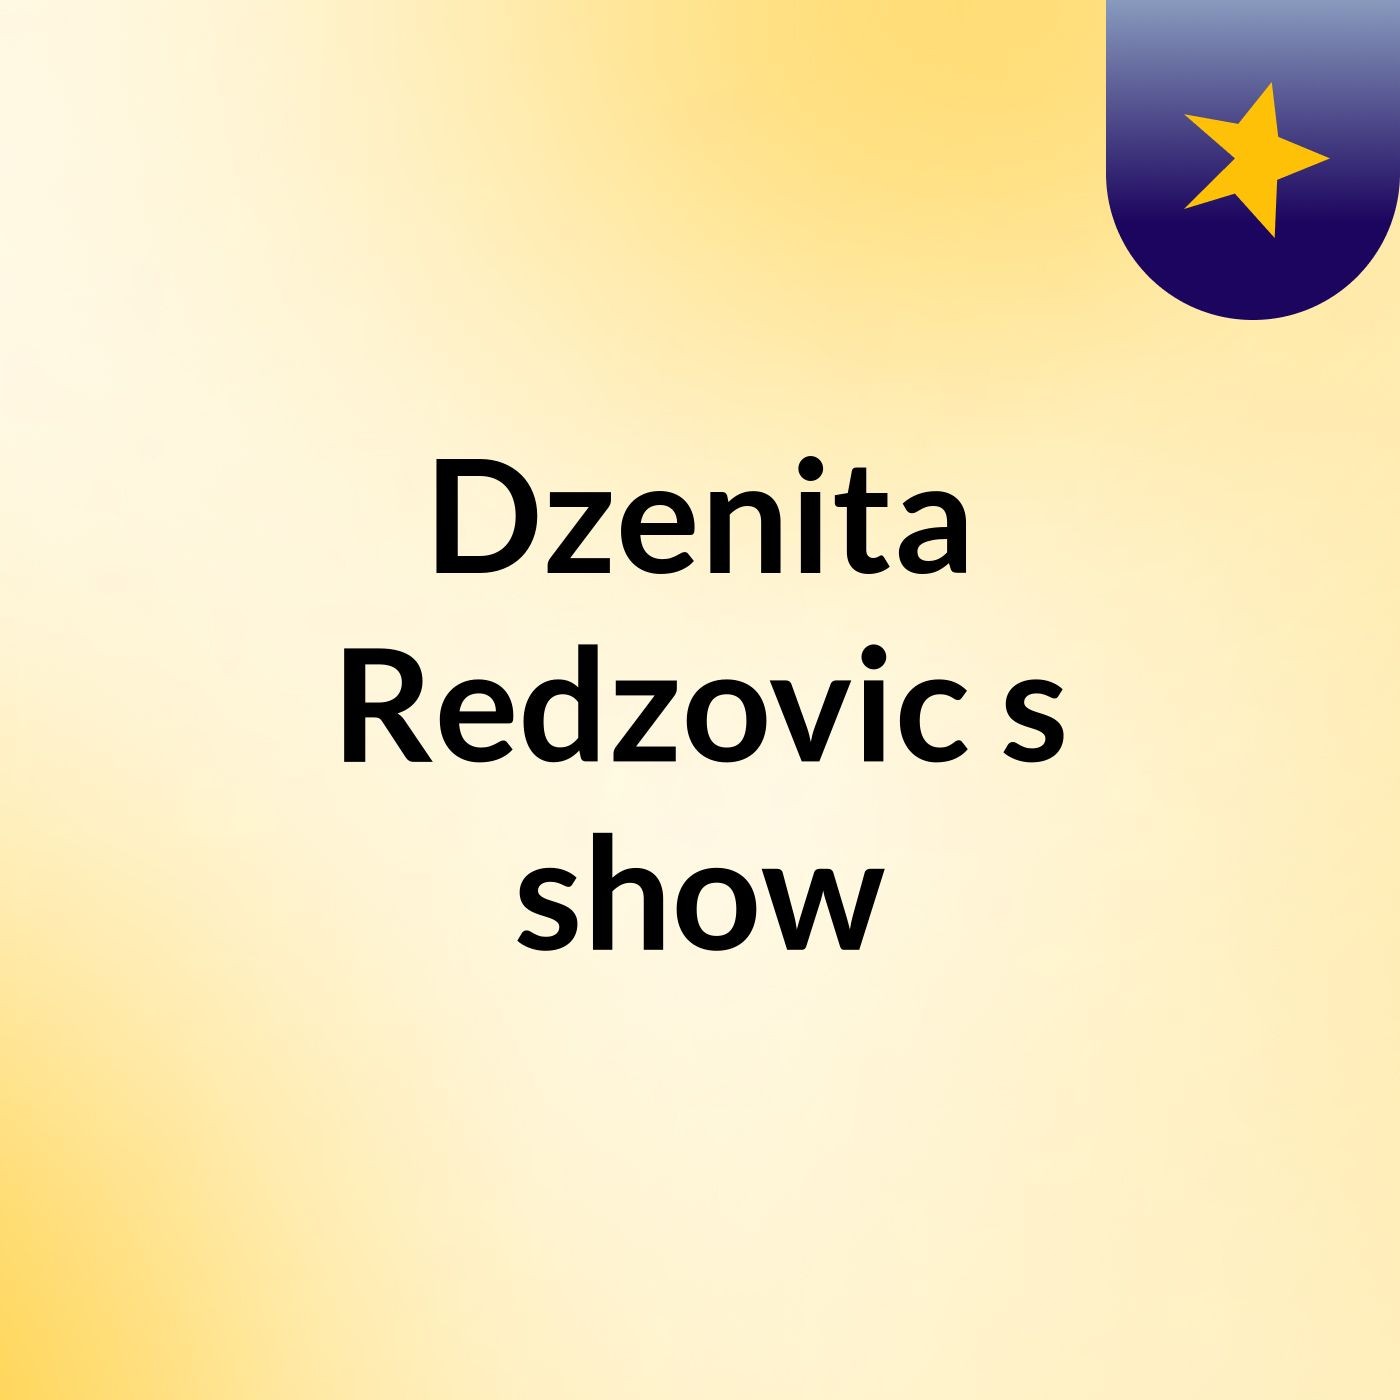 Dzenita Redzovic's show